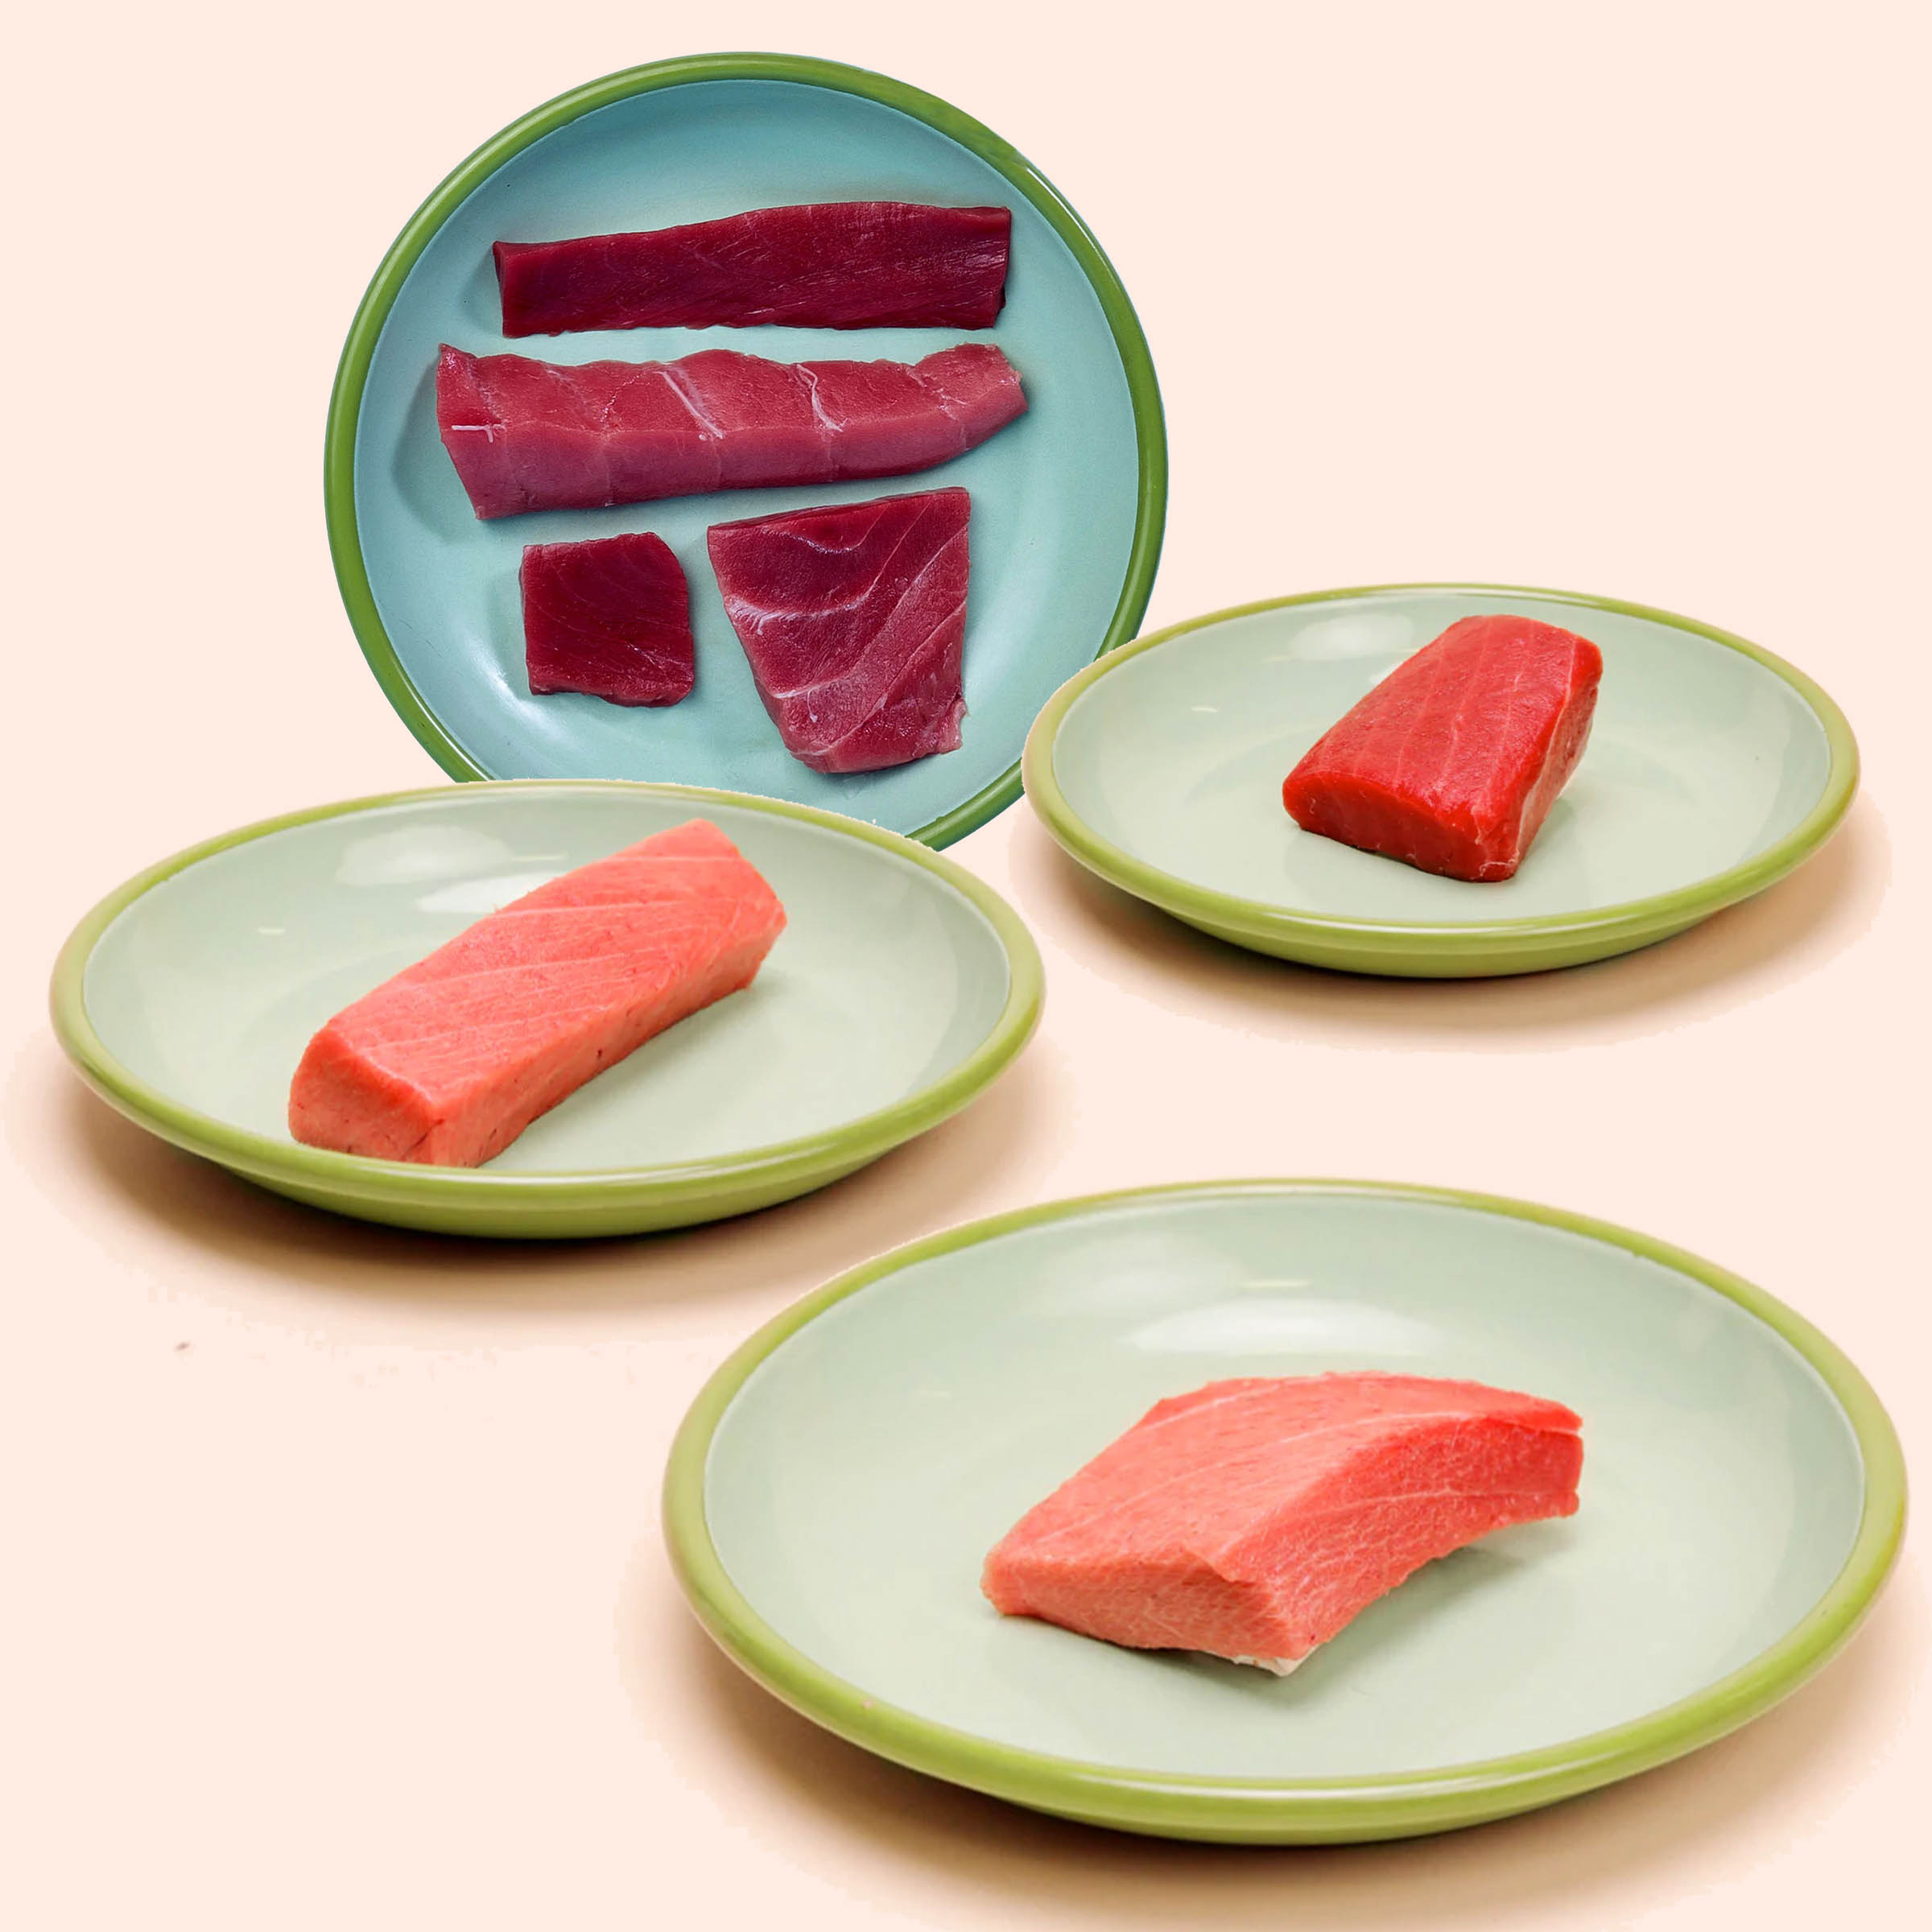 bluefin tuna sushi vs yellowfin